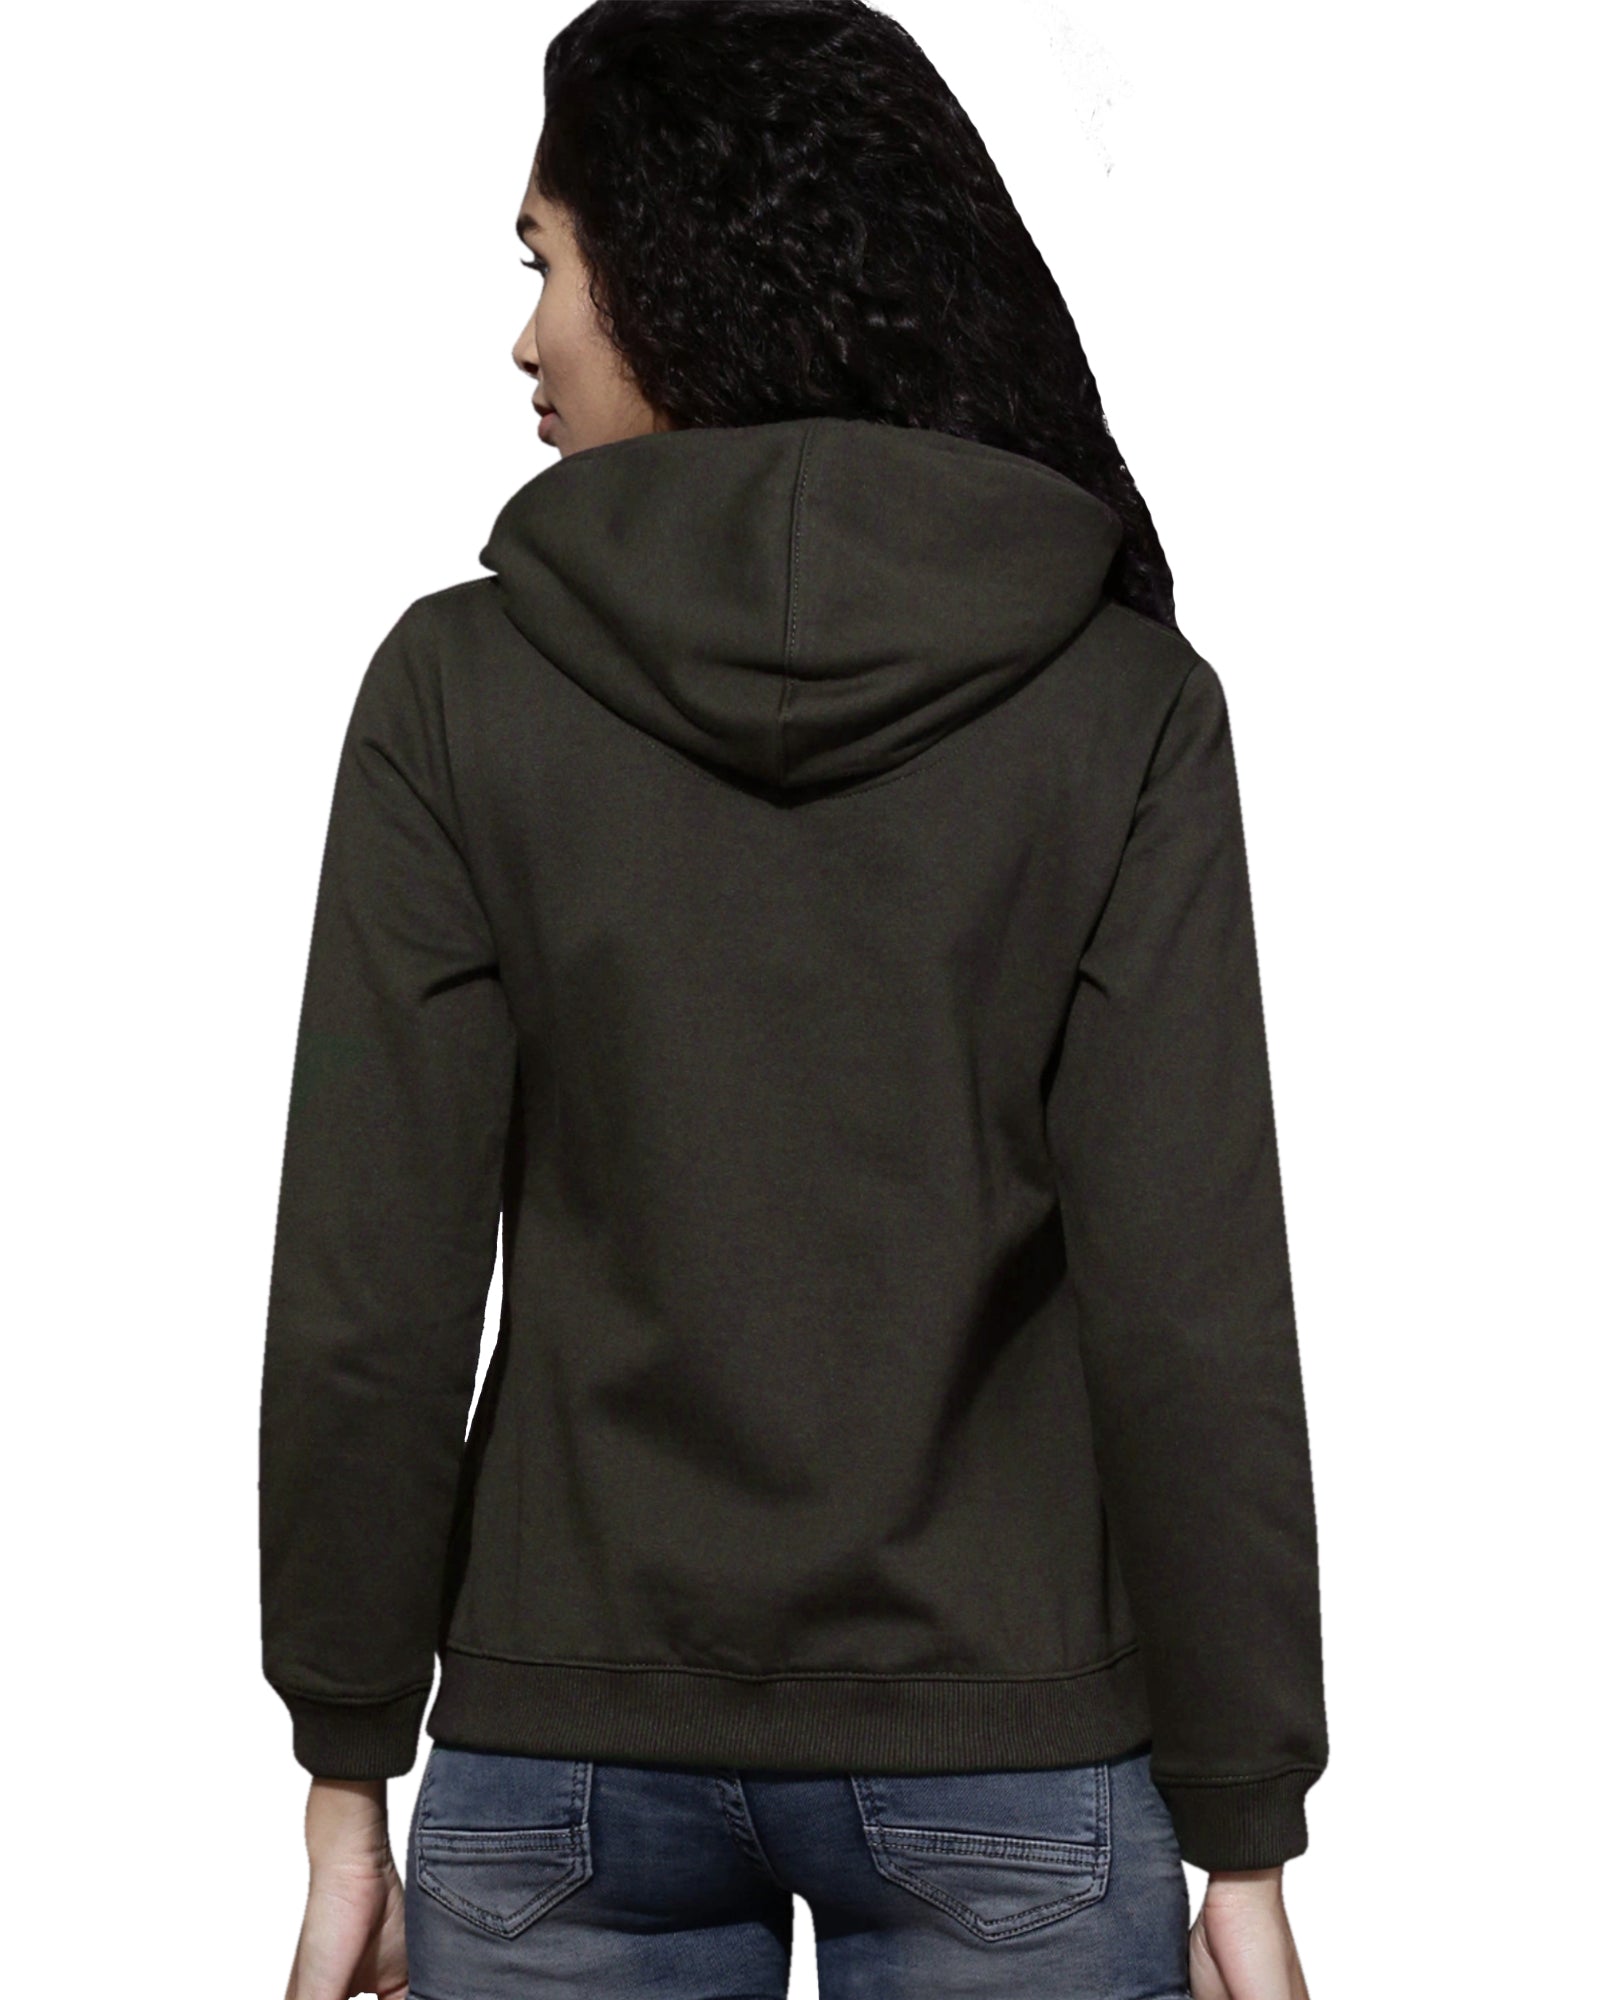 Women's Solid Zipper Hoodie Sweatshirt